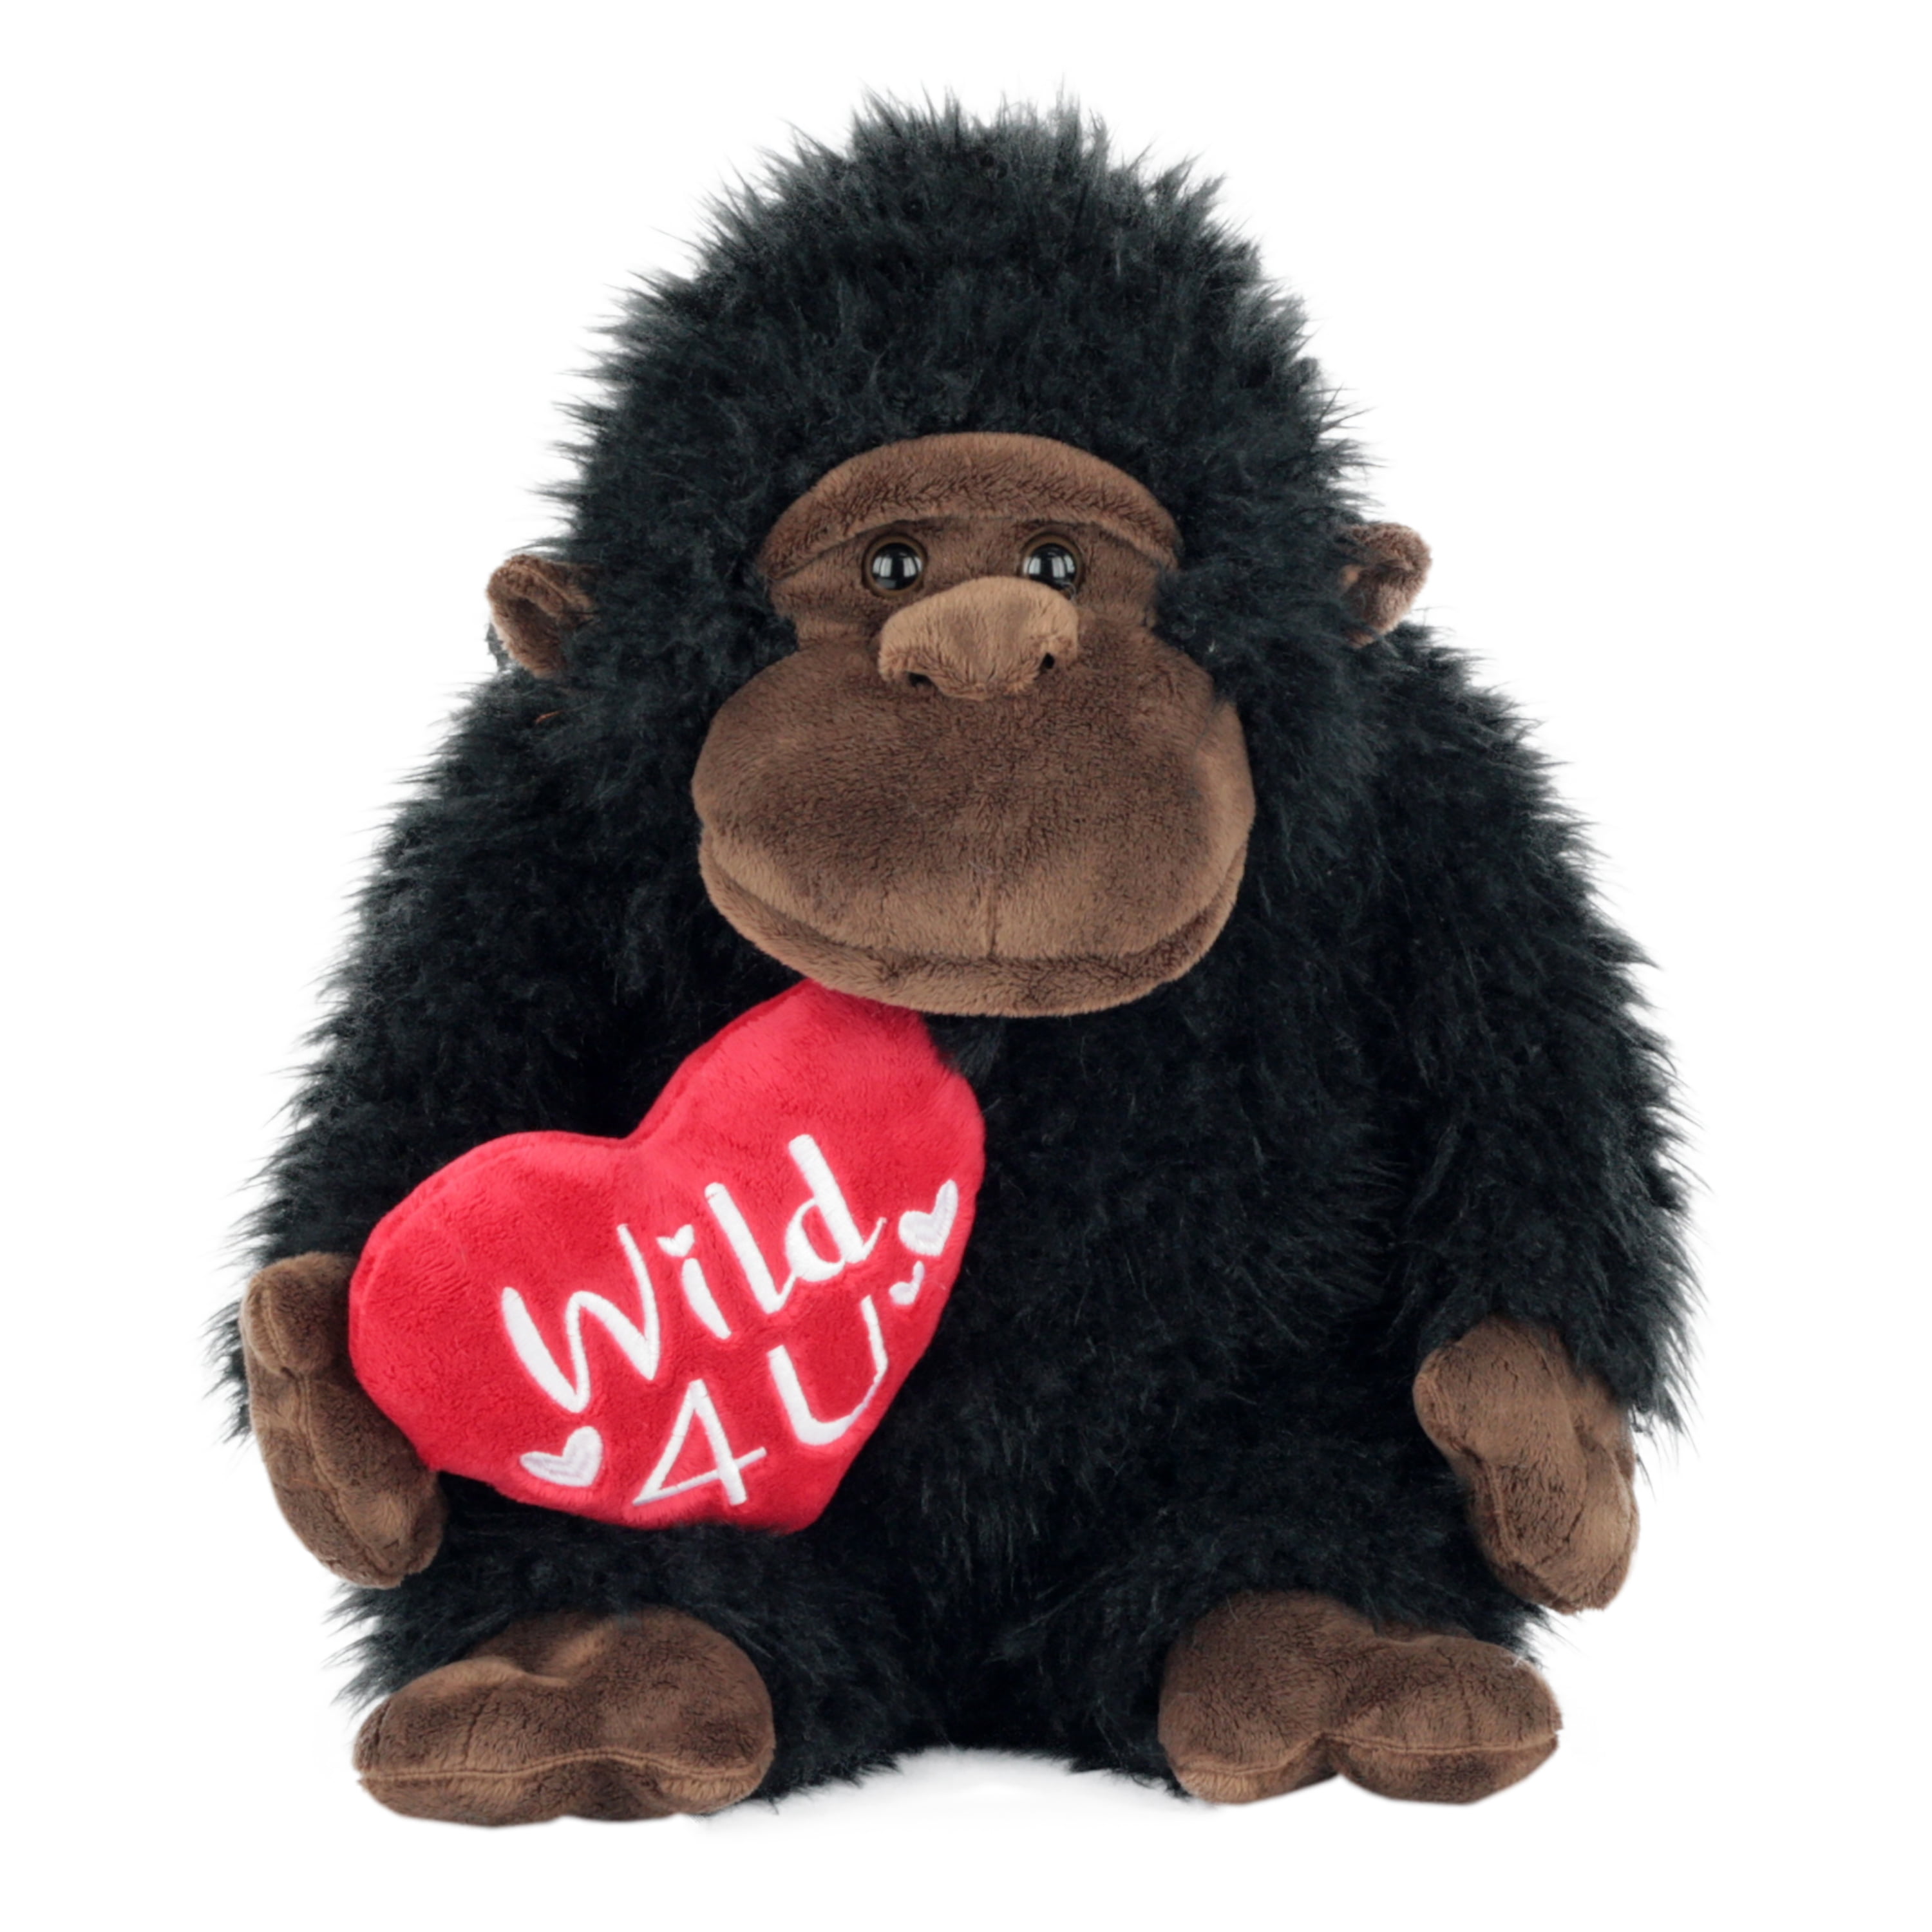 Giant Large Monkey Plush Toy Stuffed Wild Gorilla Friend Animal Pillow Gift 32/'/'